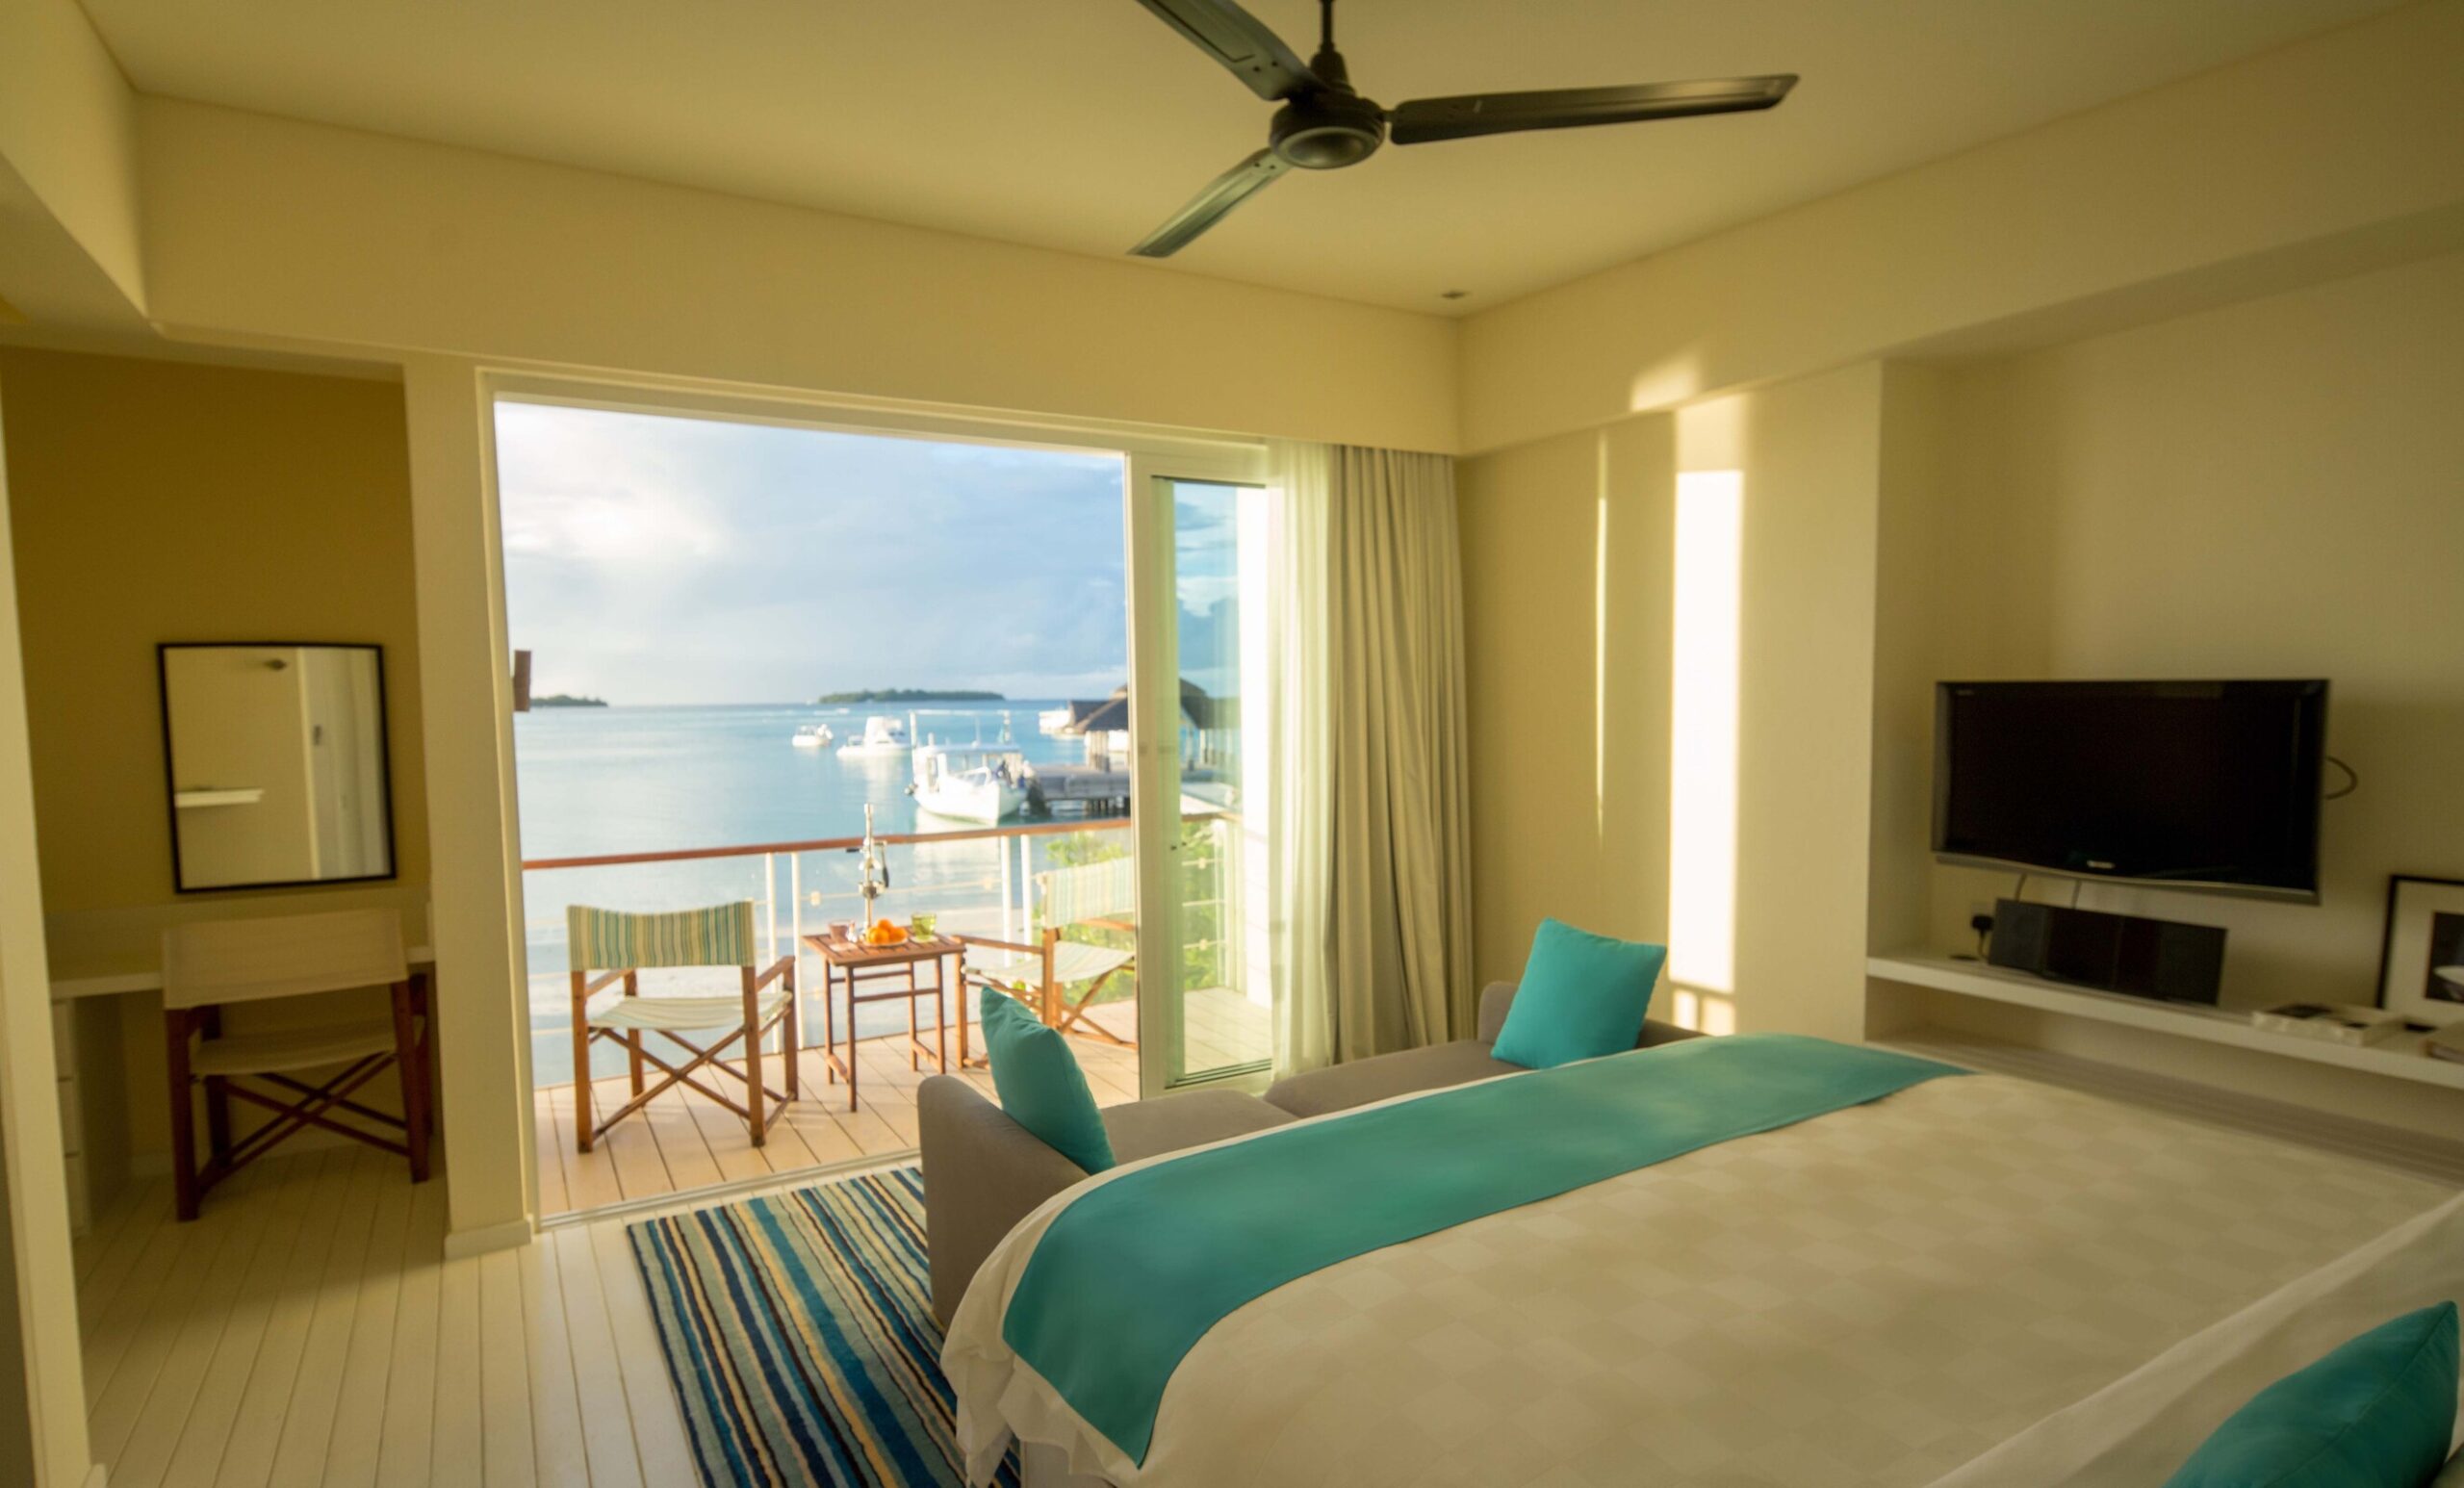 1 Bedroom Beach House Sea View at Holiday Inn Kandooma Maldives